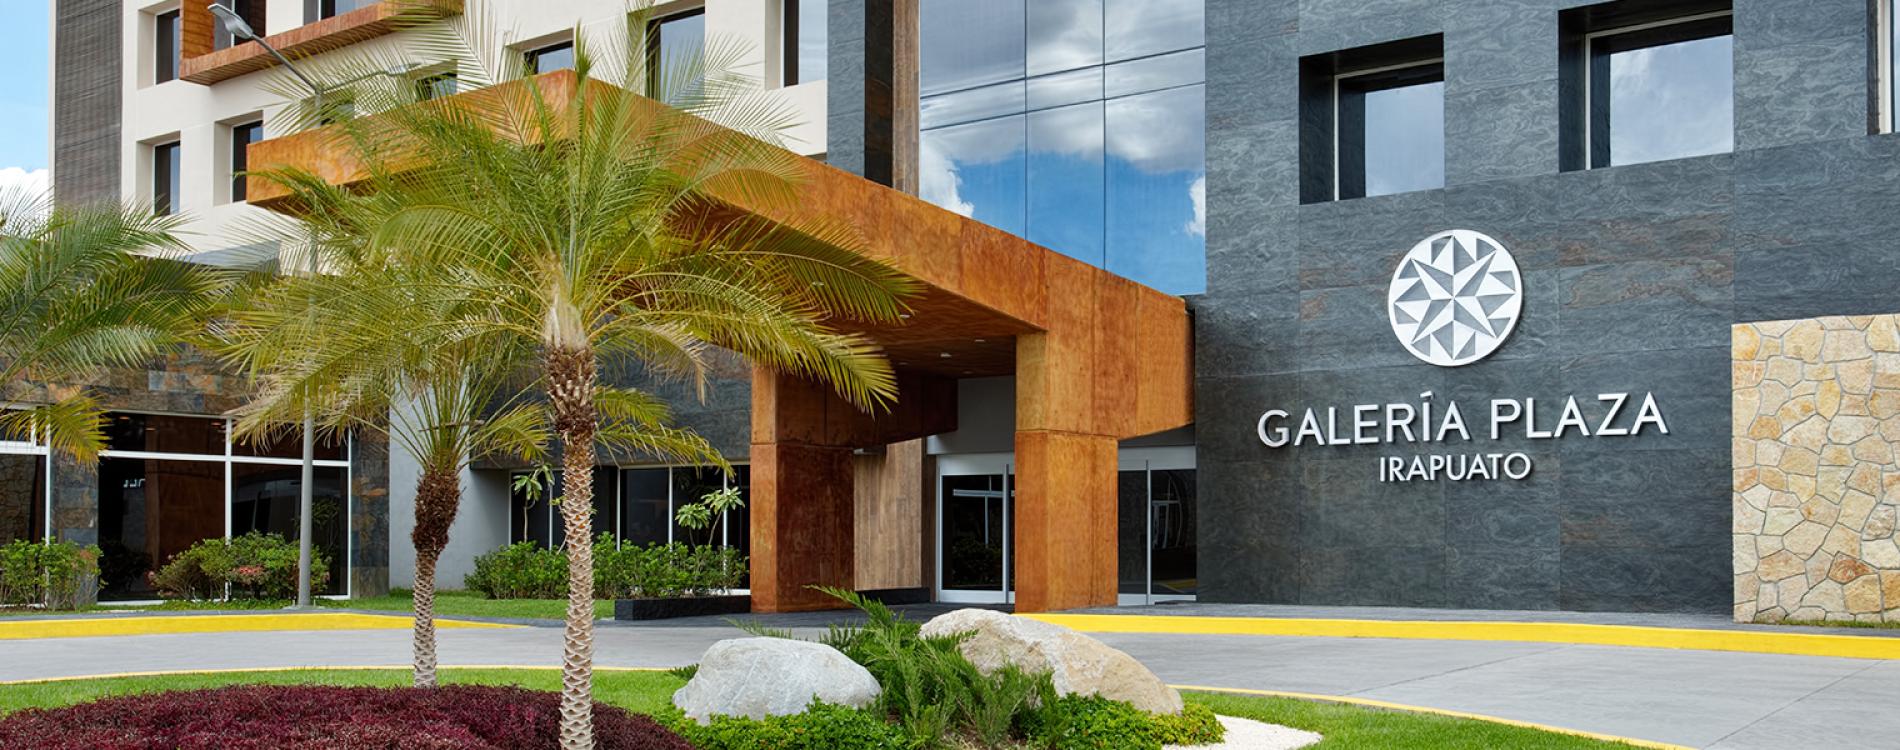 Galeria Plaza Irapuato, in Irapuato, Mexico - Preferred Hotels & Resorts